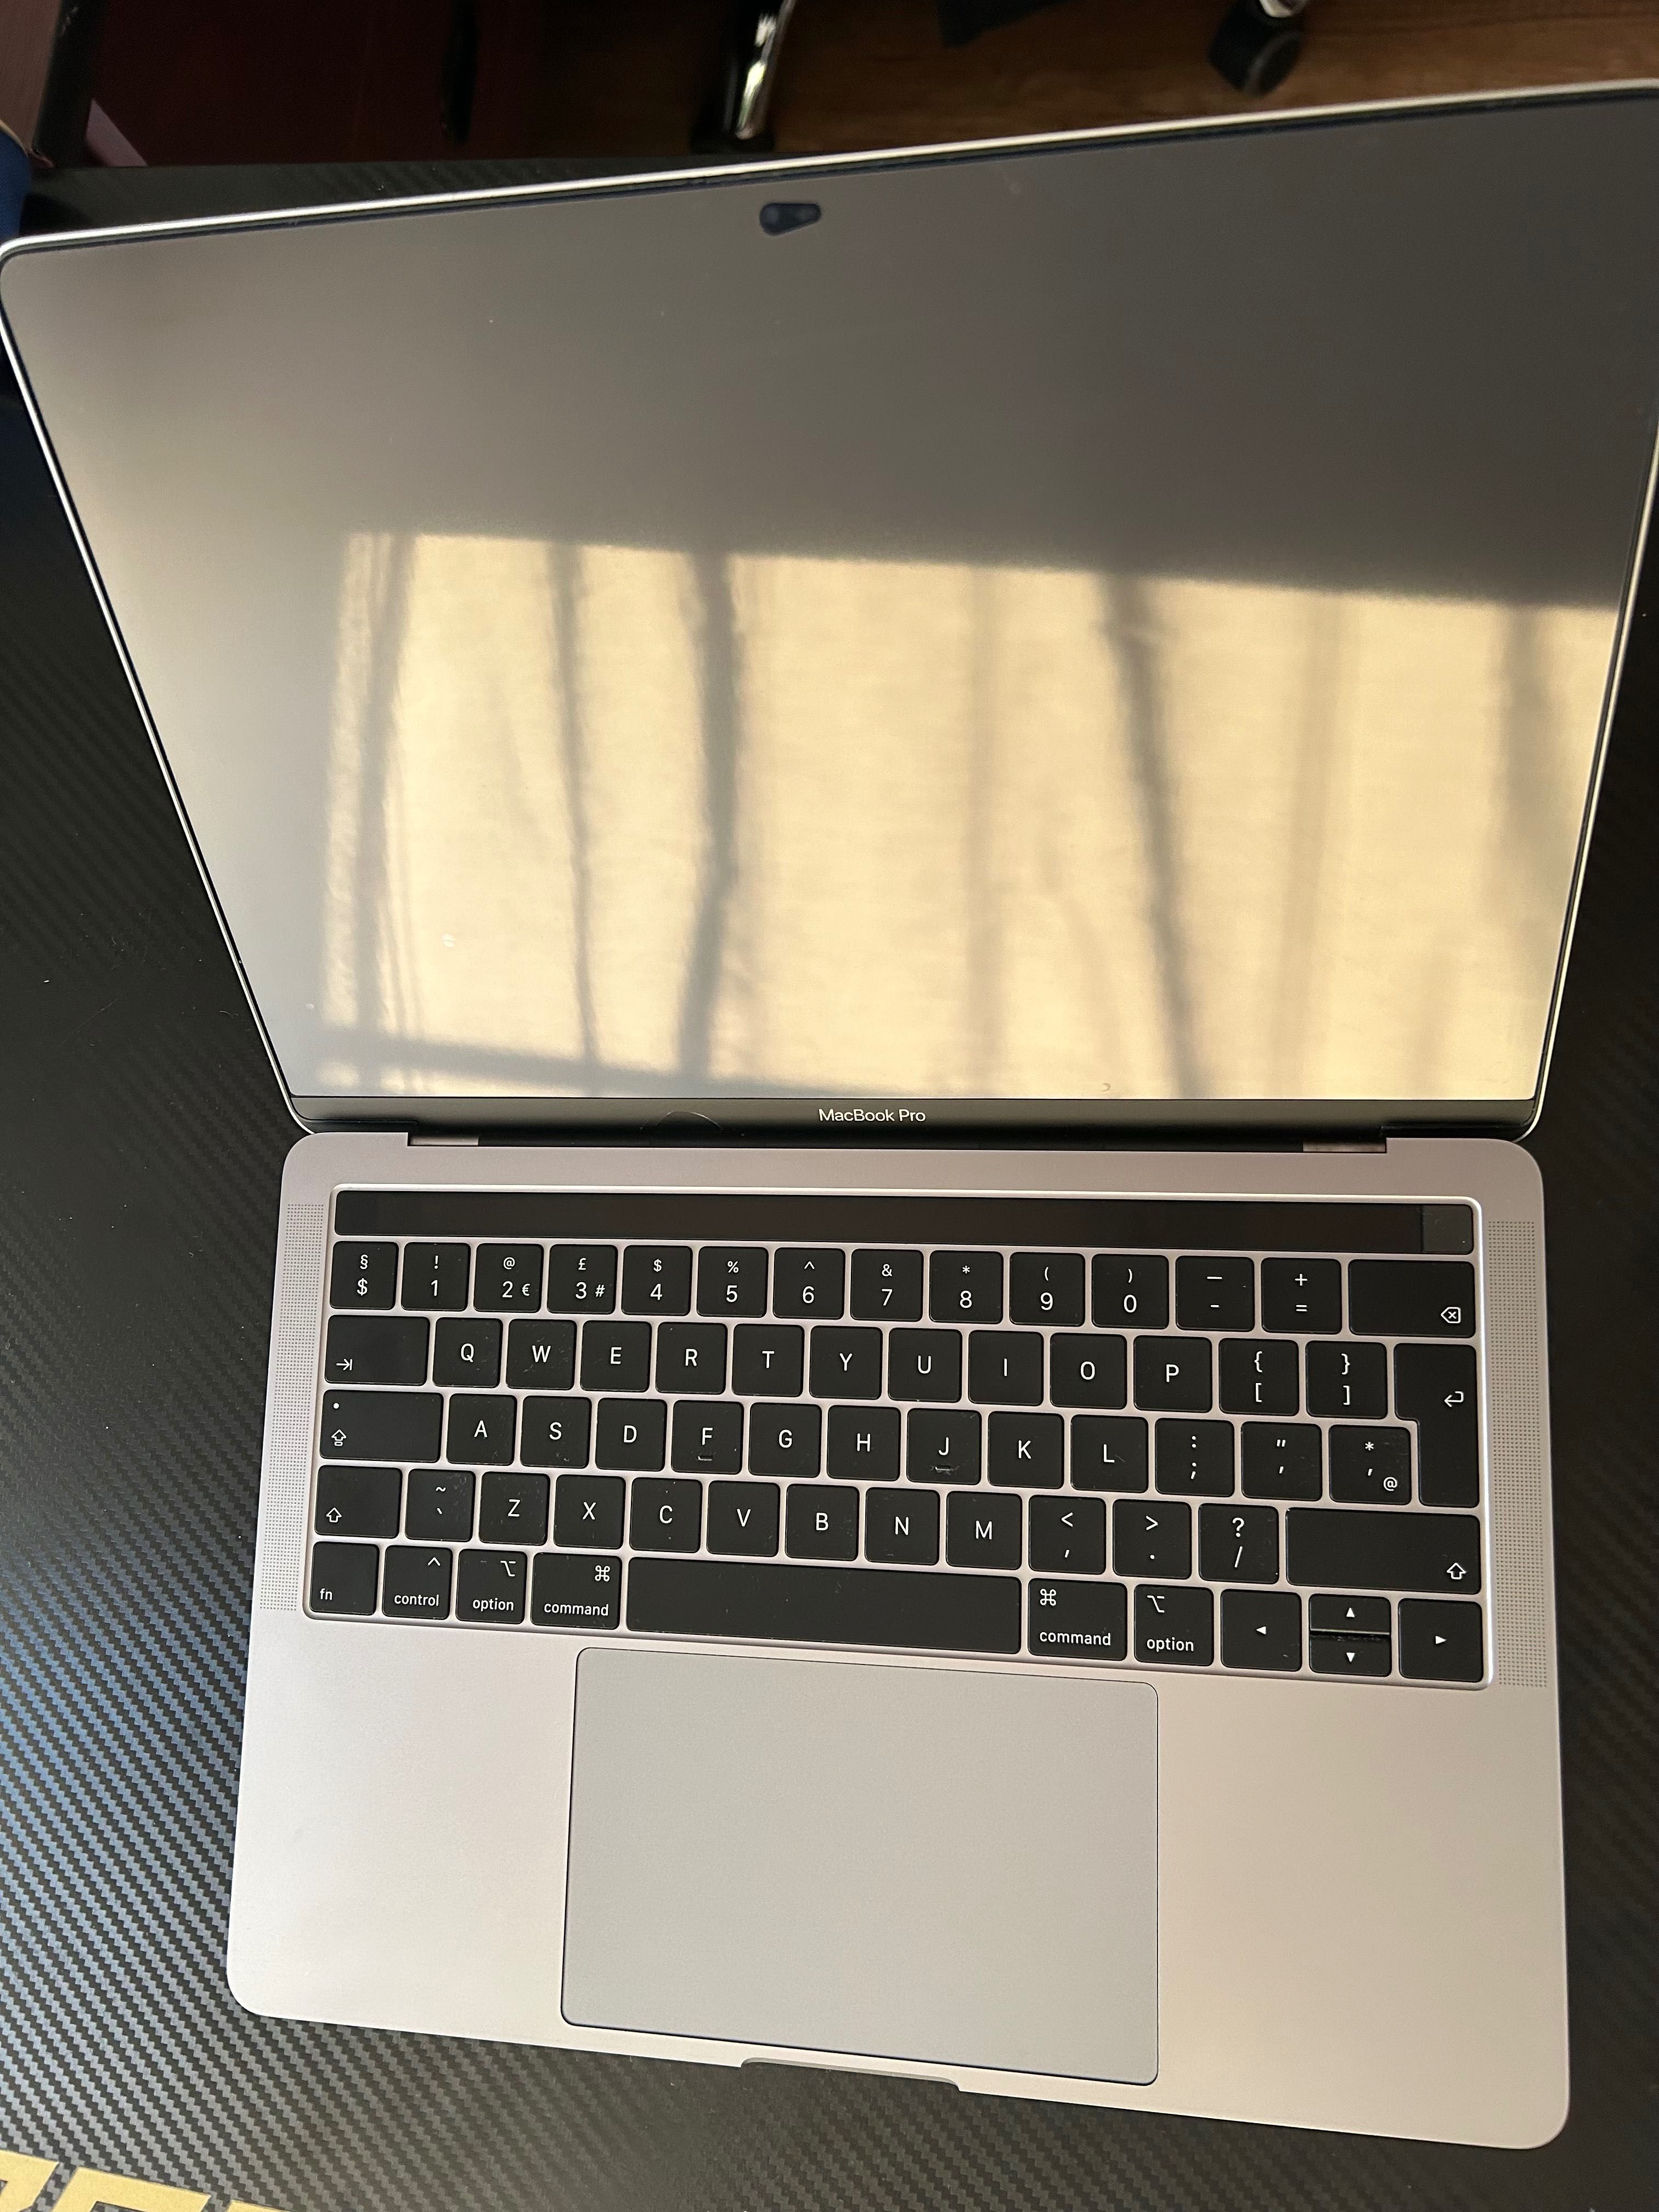 Vand Macbook Pro 2019 (A2159), Touchbar, i5 1.4 Ghz.